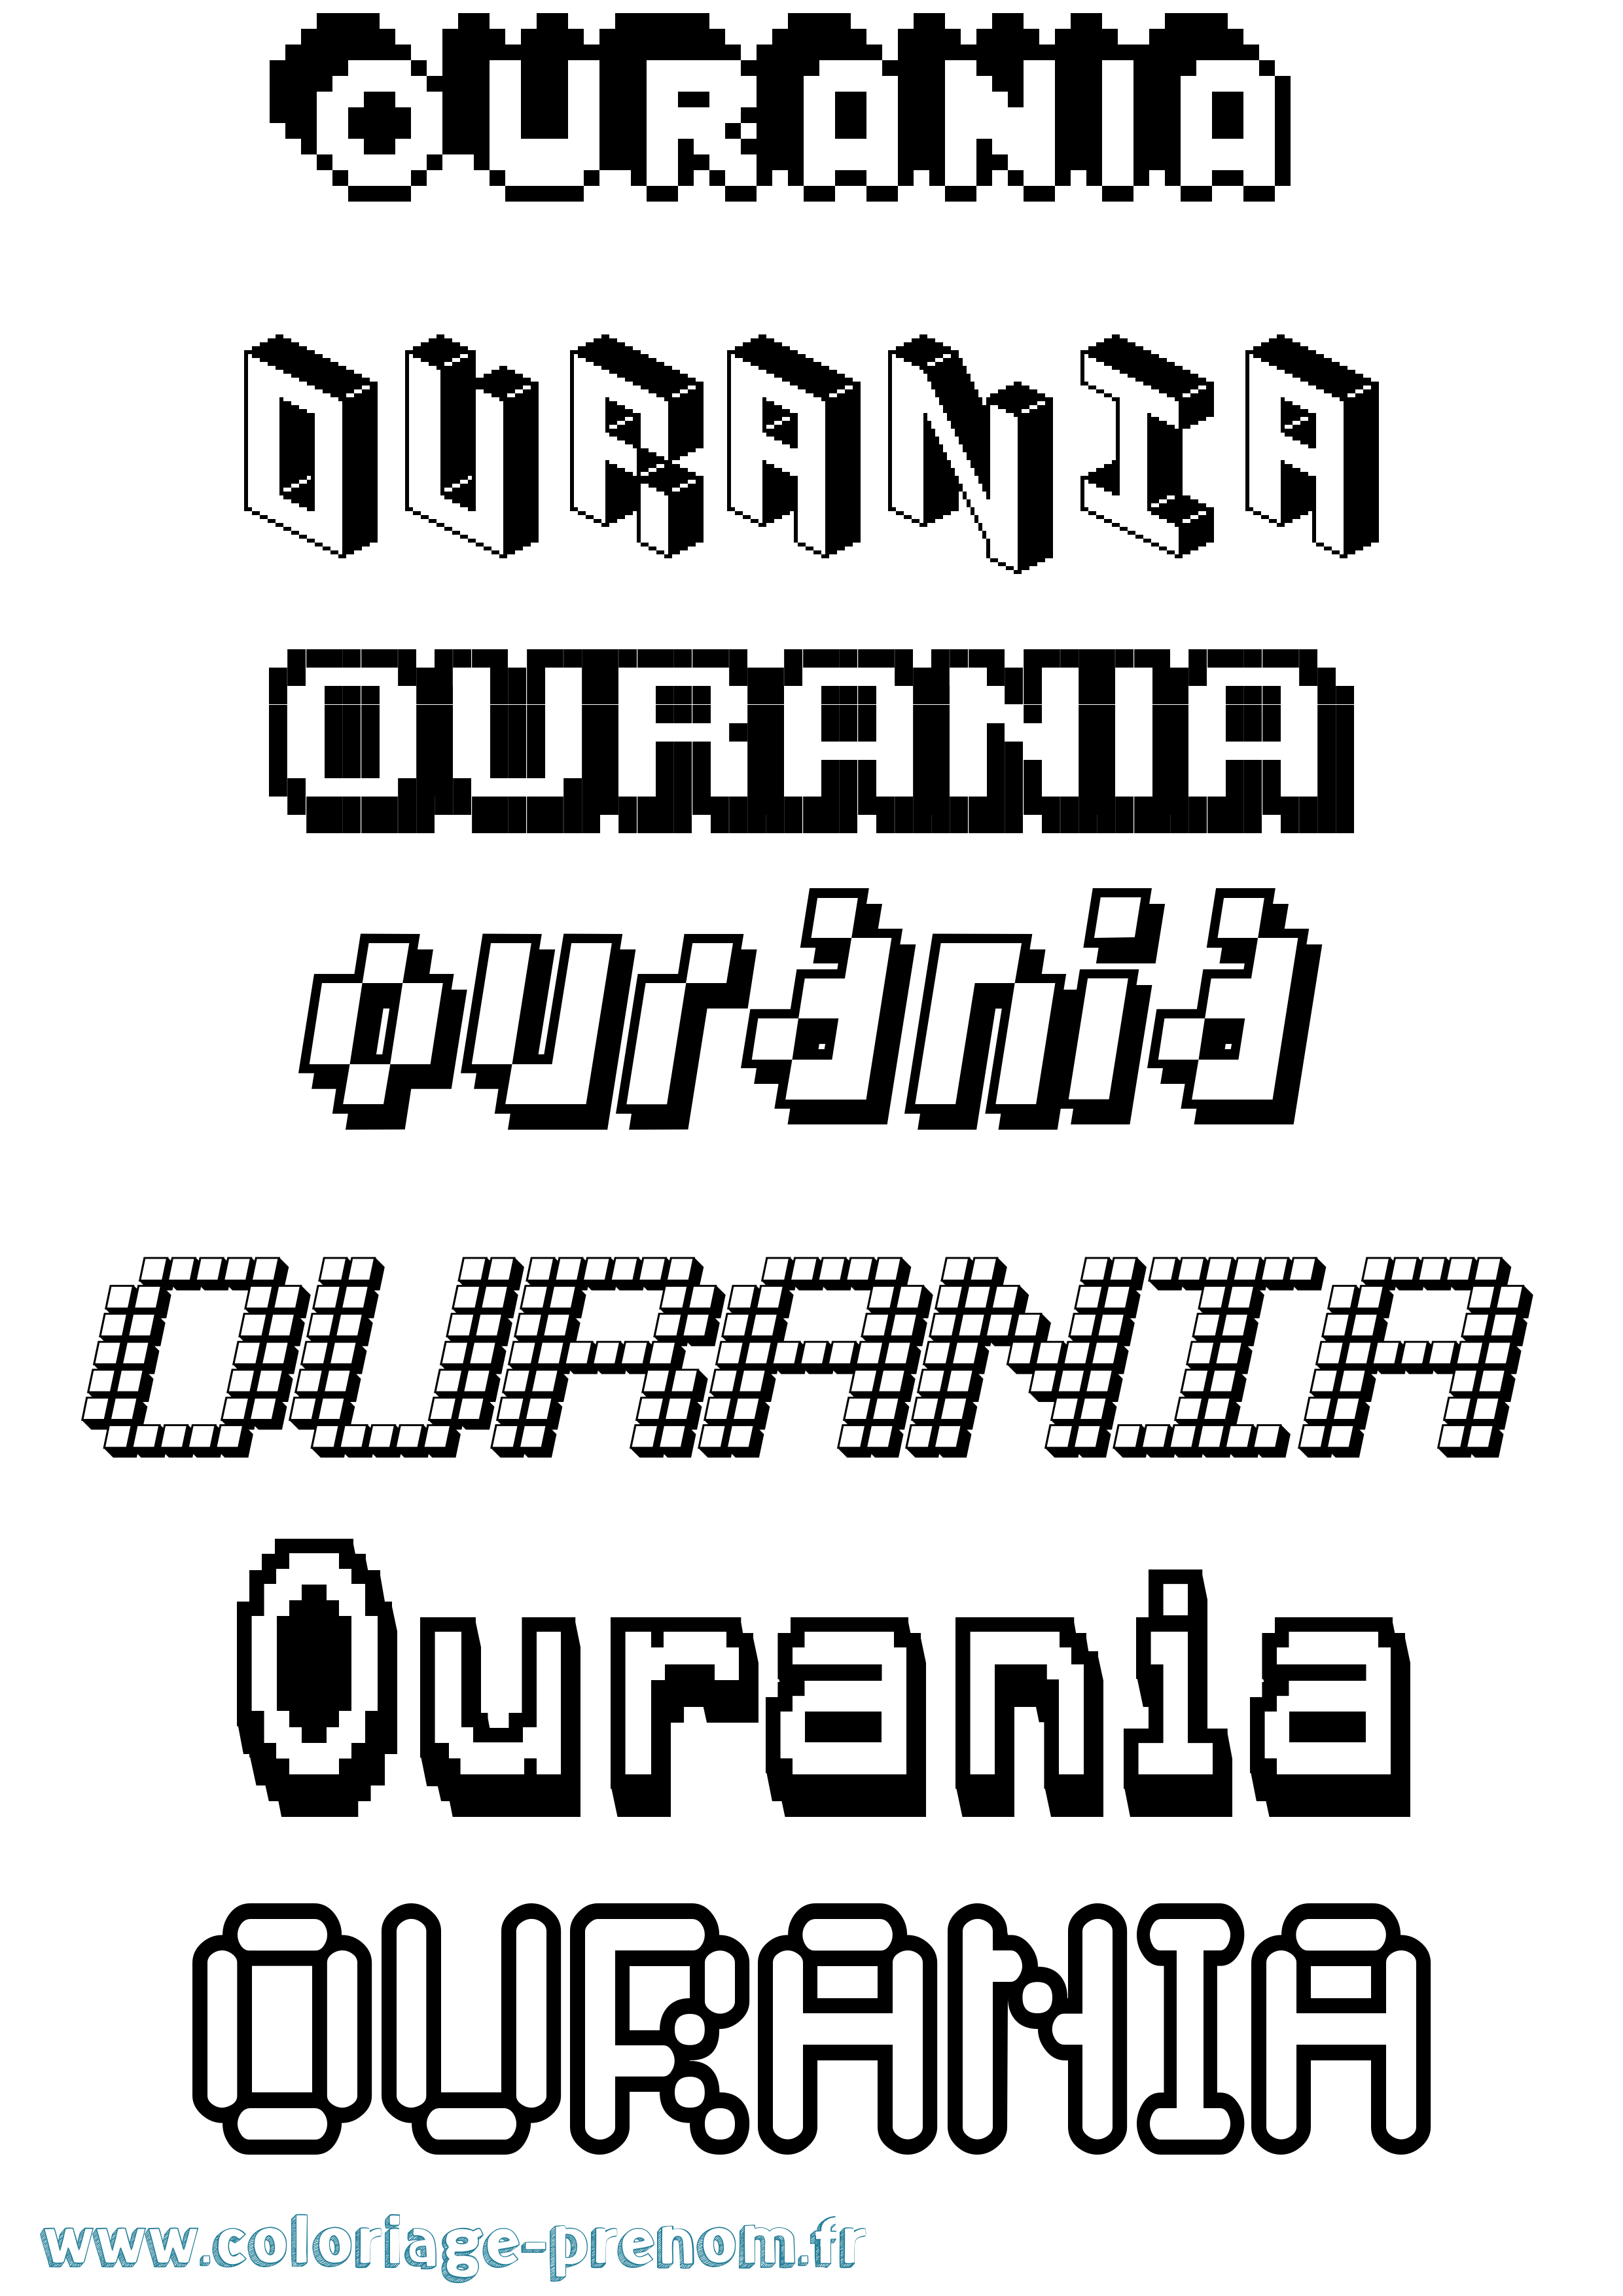 Coloriage prénom Ourania Pixel